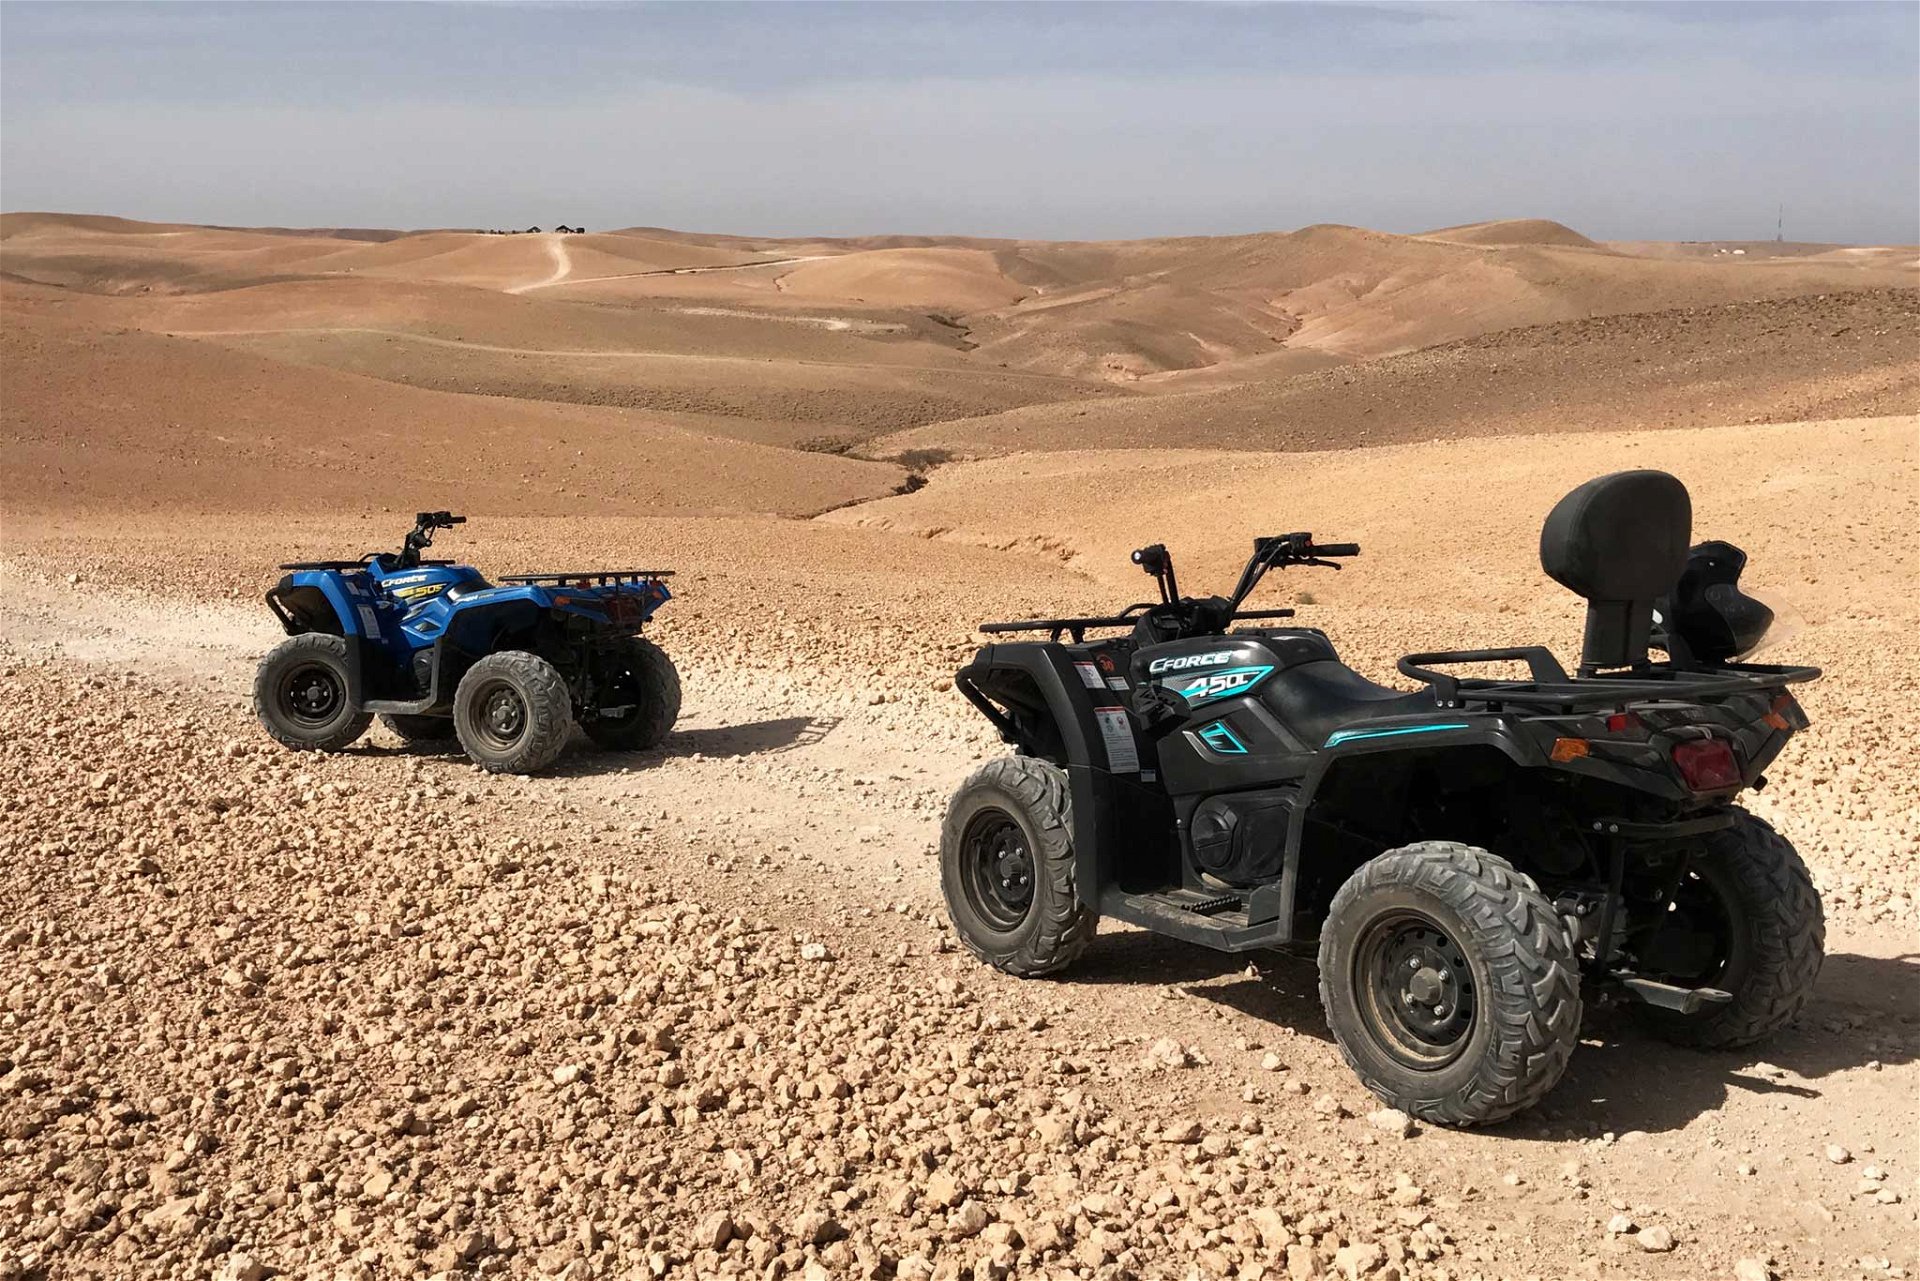 Wer es abenteuerlicher mag, kommt bei einer Squad-Tour durch die Wüste voll auf seine Kosten. 